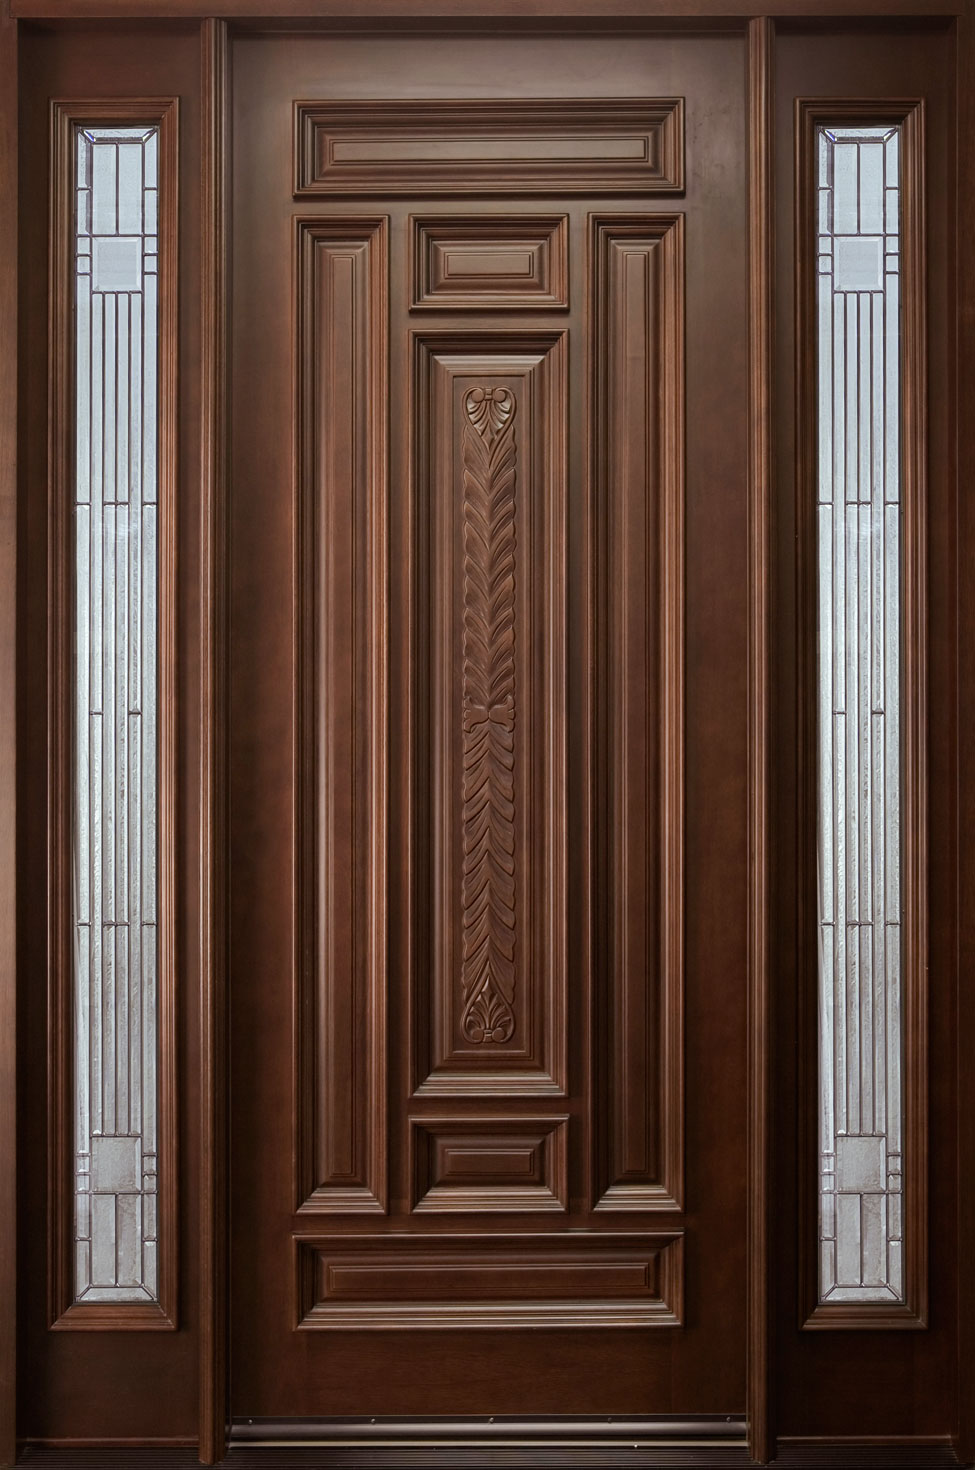 Solid Wood Single Door Design photo - 6